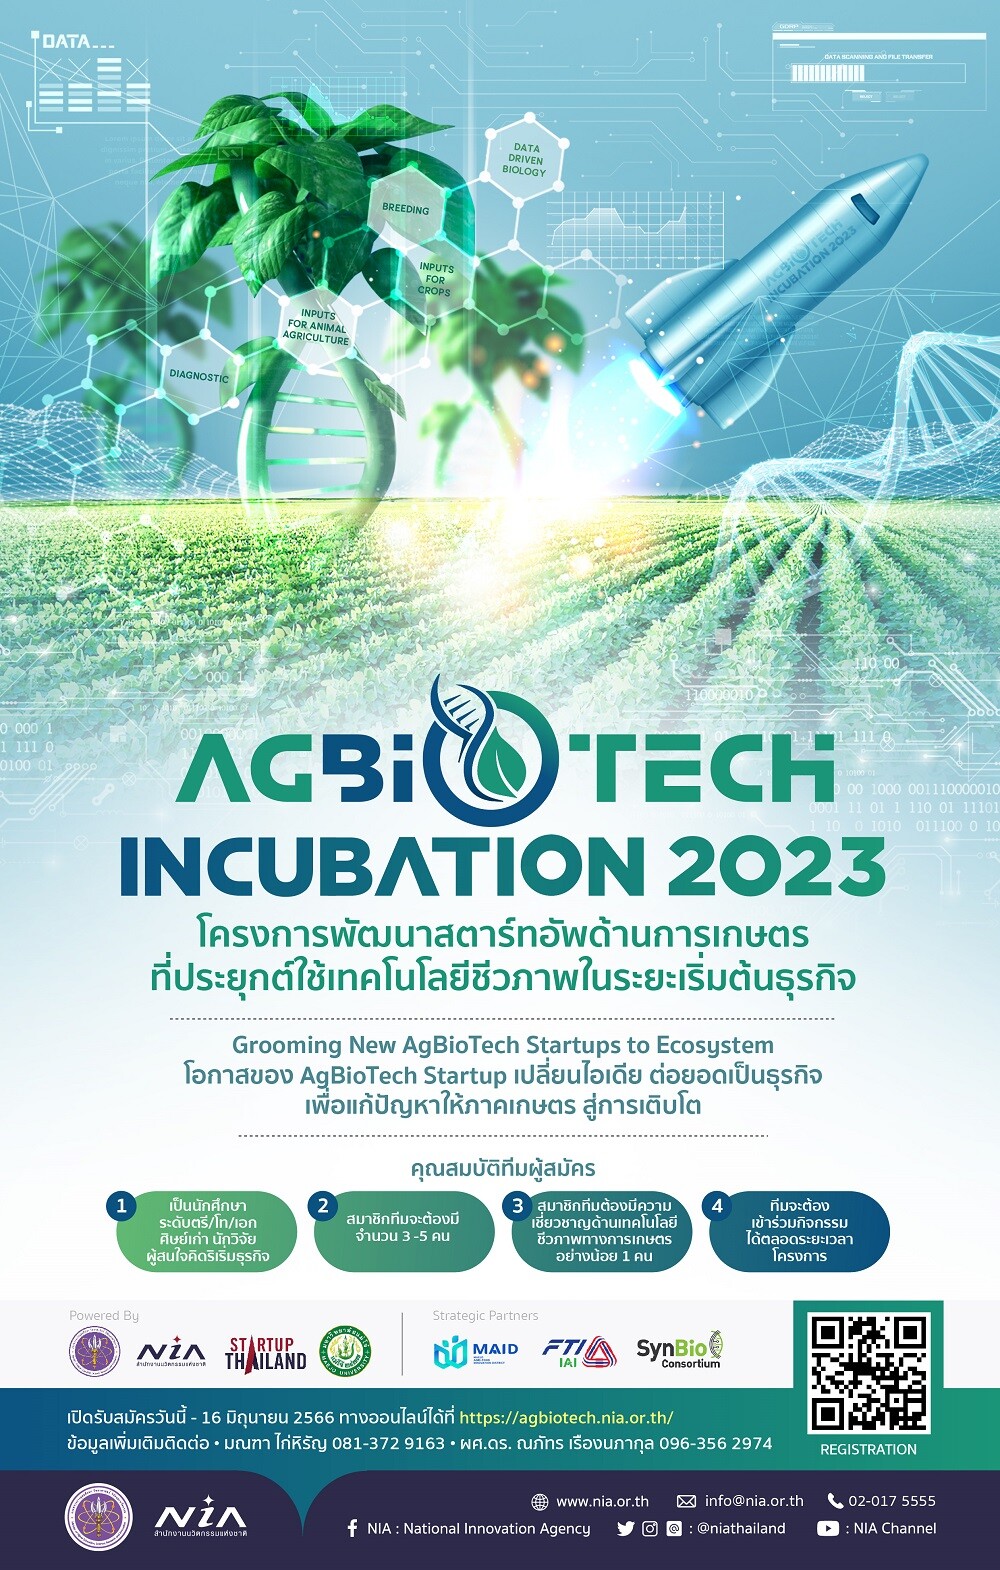 NIA ร่วมกับม. แม่โจ้เปิดรับสมัครทีมสตาร์ทอัพเข้าร่วมโครงการ AgBioTech Incubation 2023 เปลี่ยนไอเดียเพื่อต่อยอดเป็นธุรกิจ นำเทคโนโลยีชีวภาพแก้ปัญหาภาคเกษตรด้วยความแม่นยำสู่ความยั่งยืน